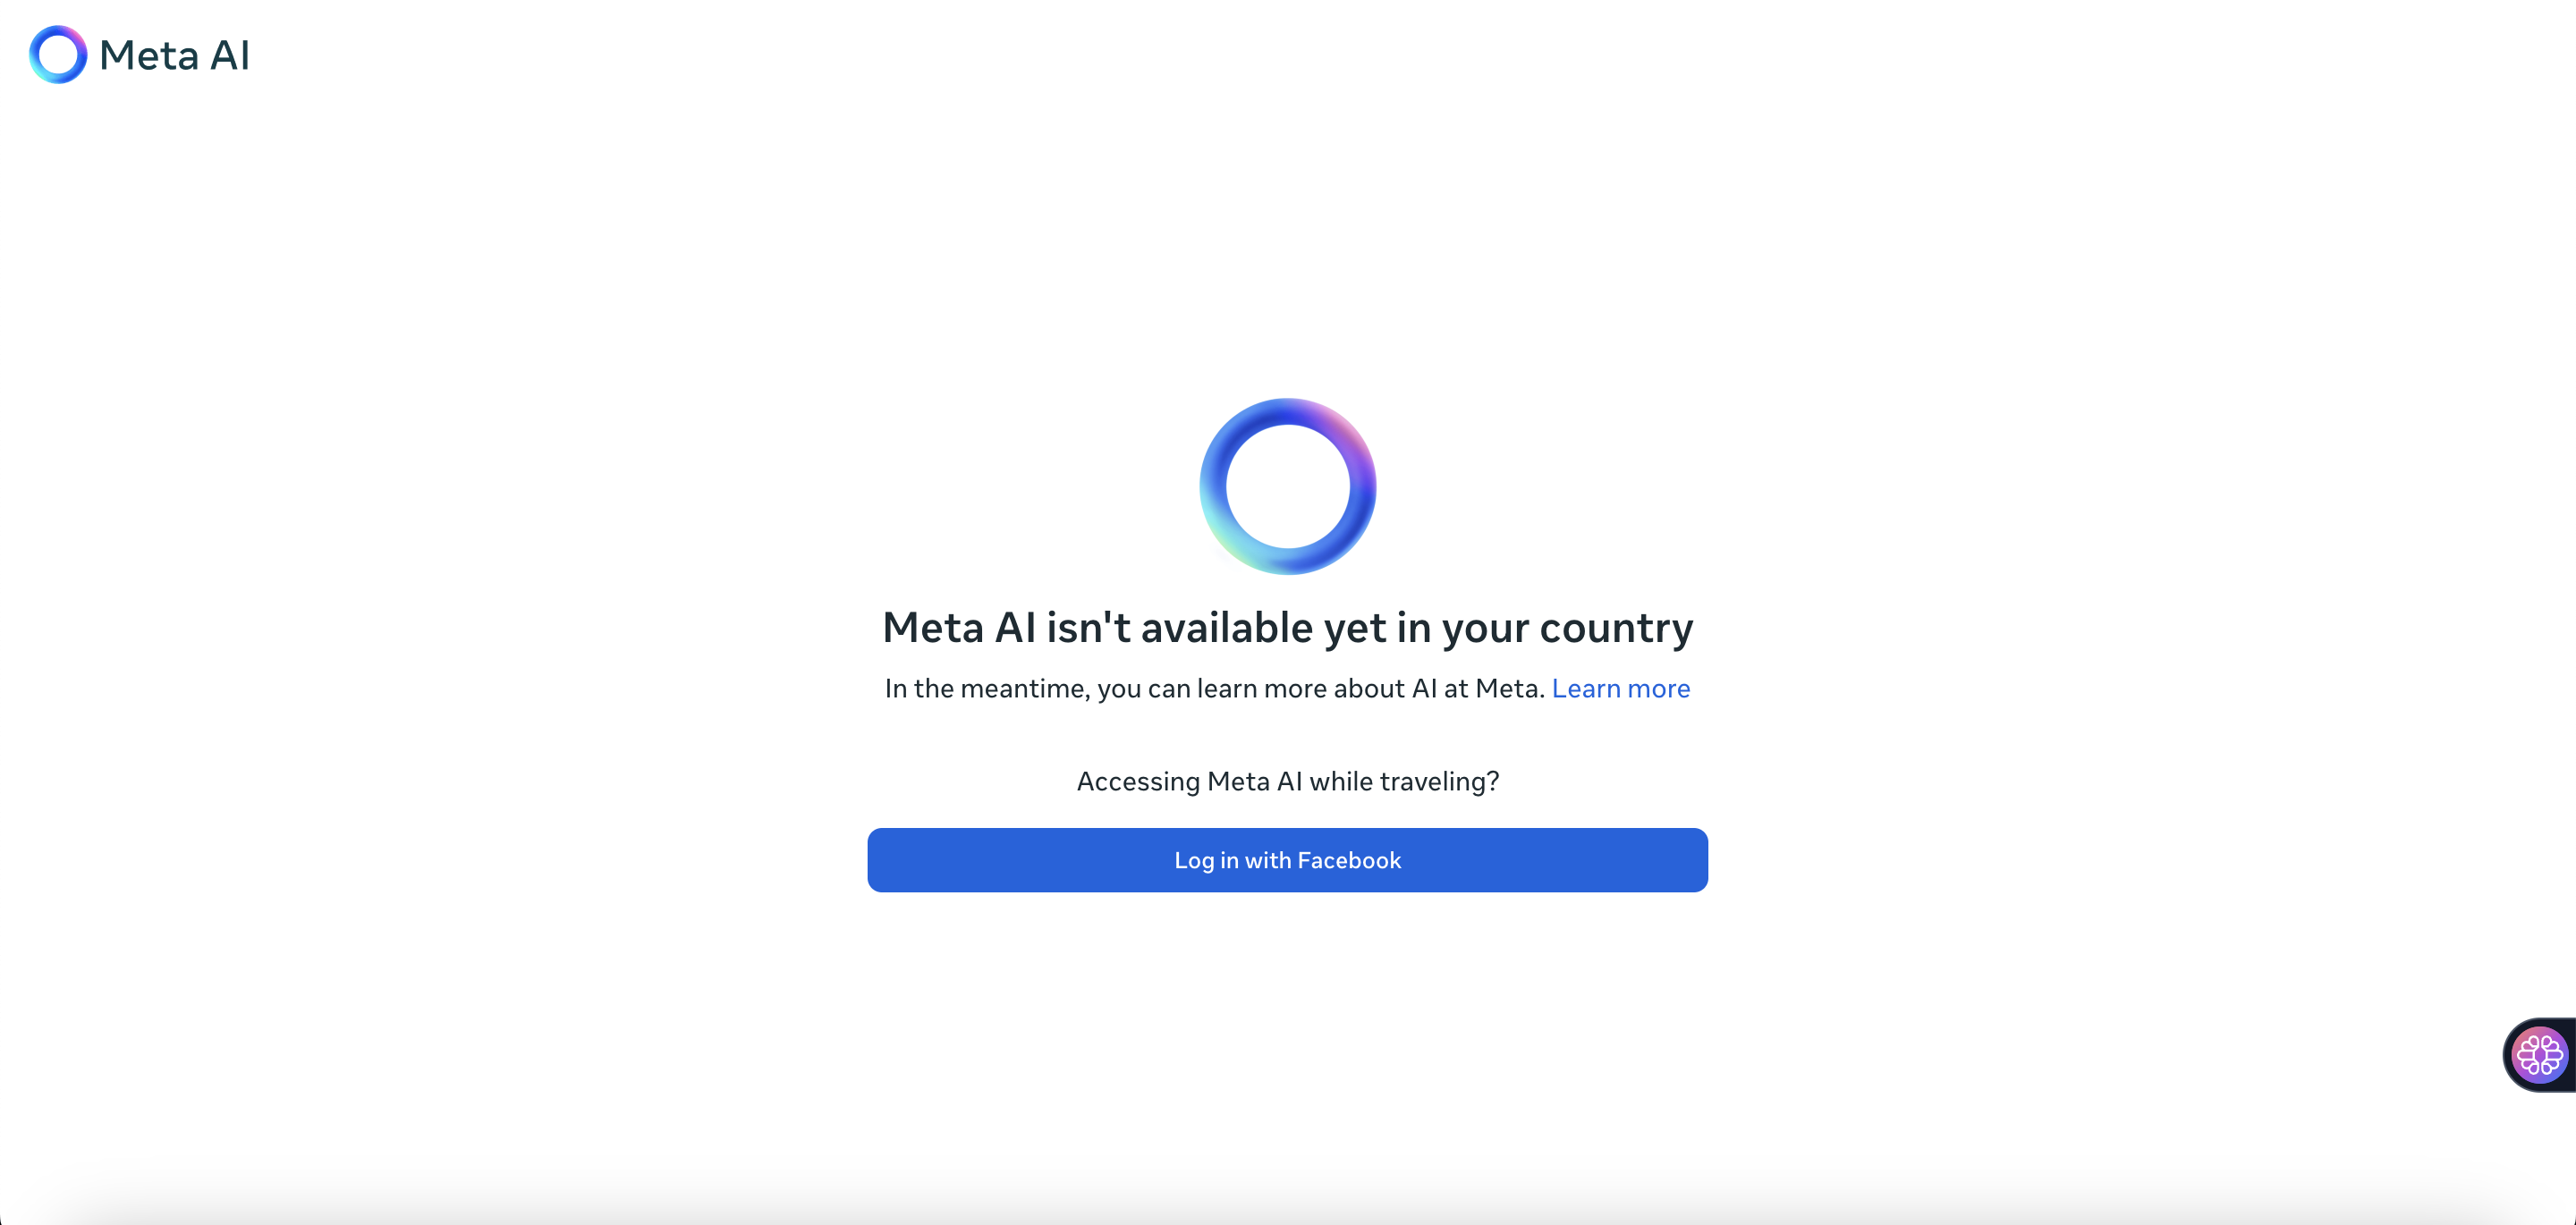 Meta AI n'est pas encore disponible dans ton pays